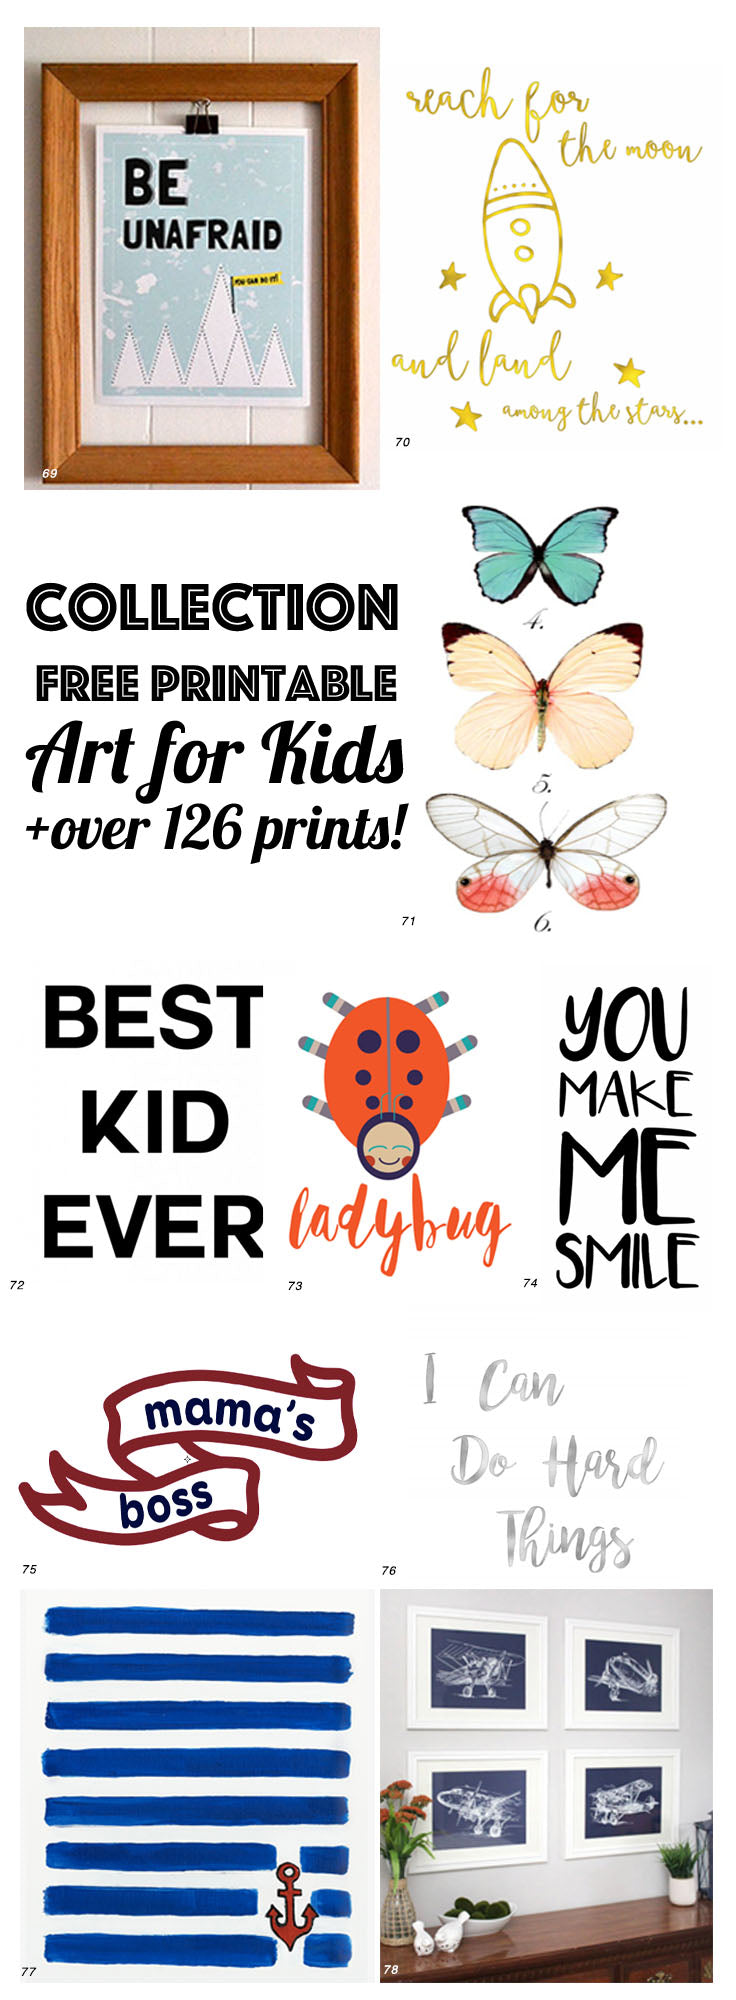 Free Printable Art for Kids